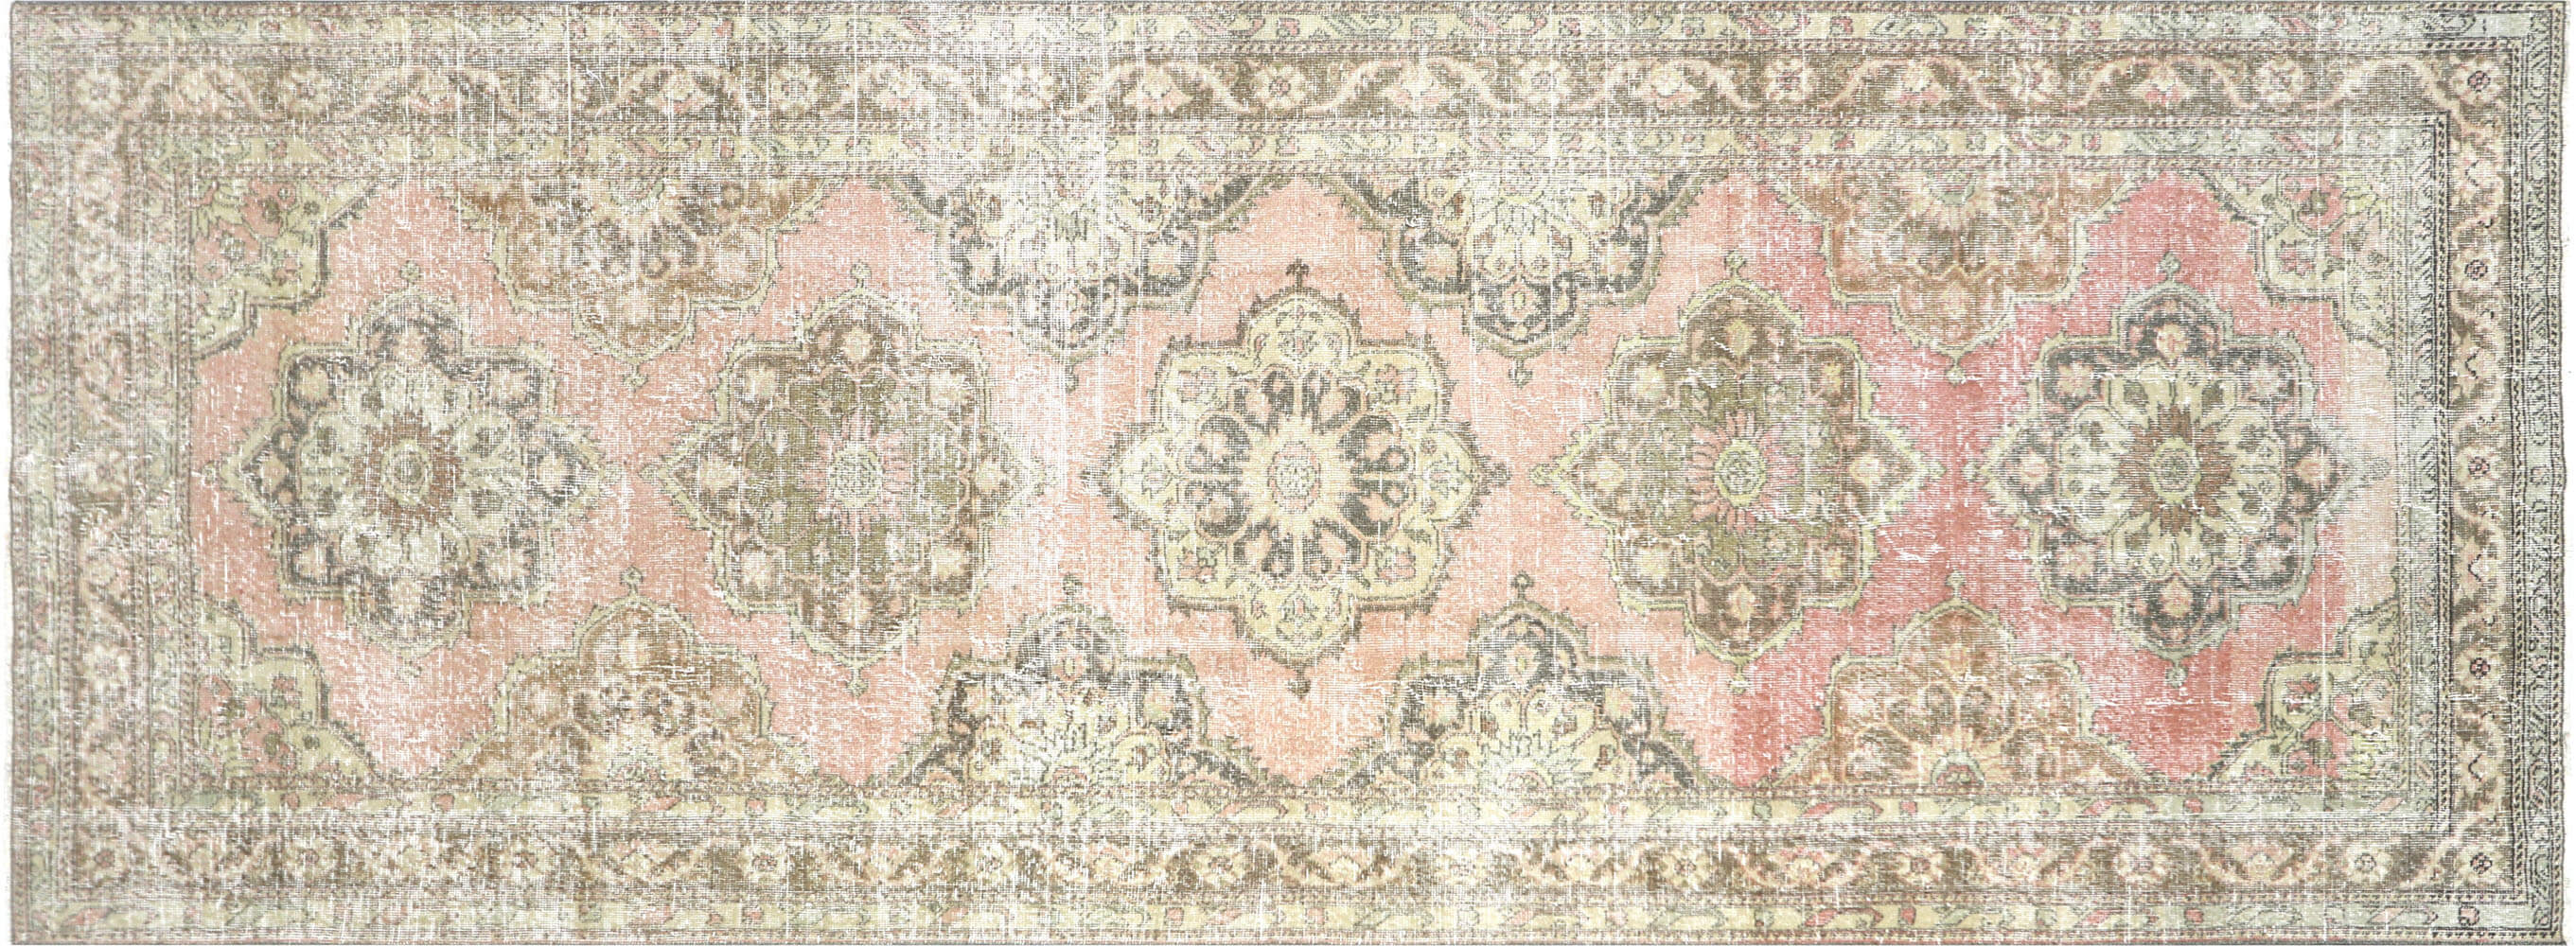 Vintage Turkish Oushak Carpet - 4'10" x 12'10"